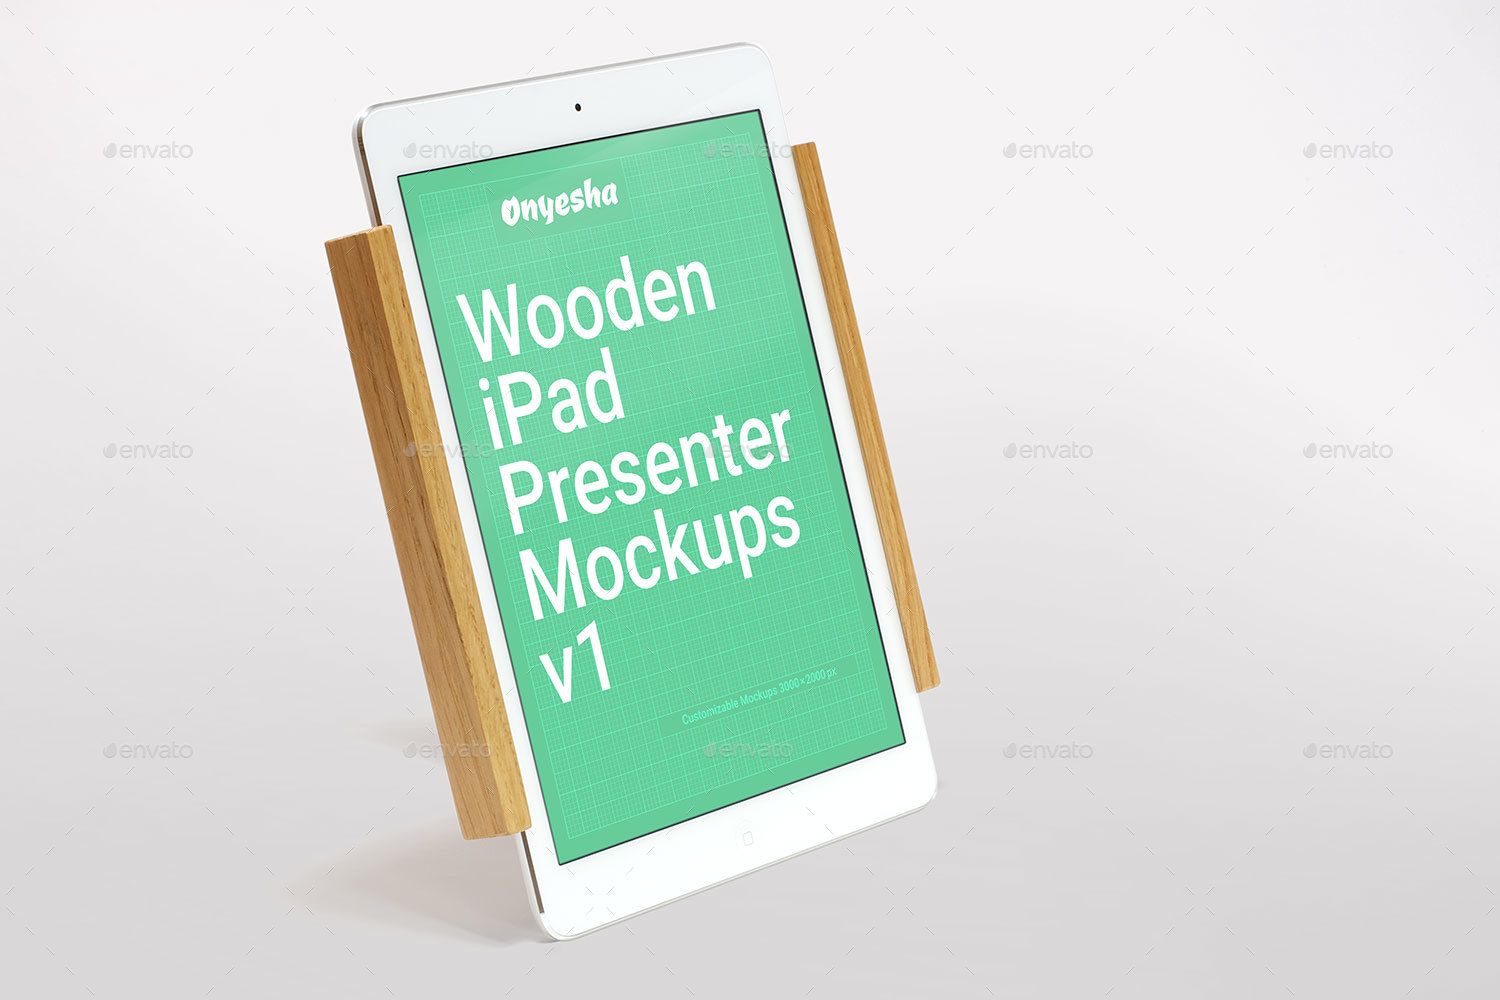 Wooden iPad Presenter V1 Ad Files